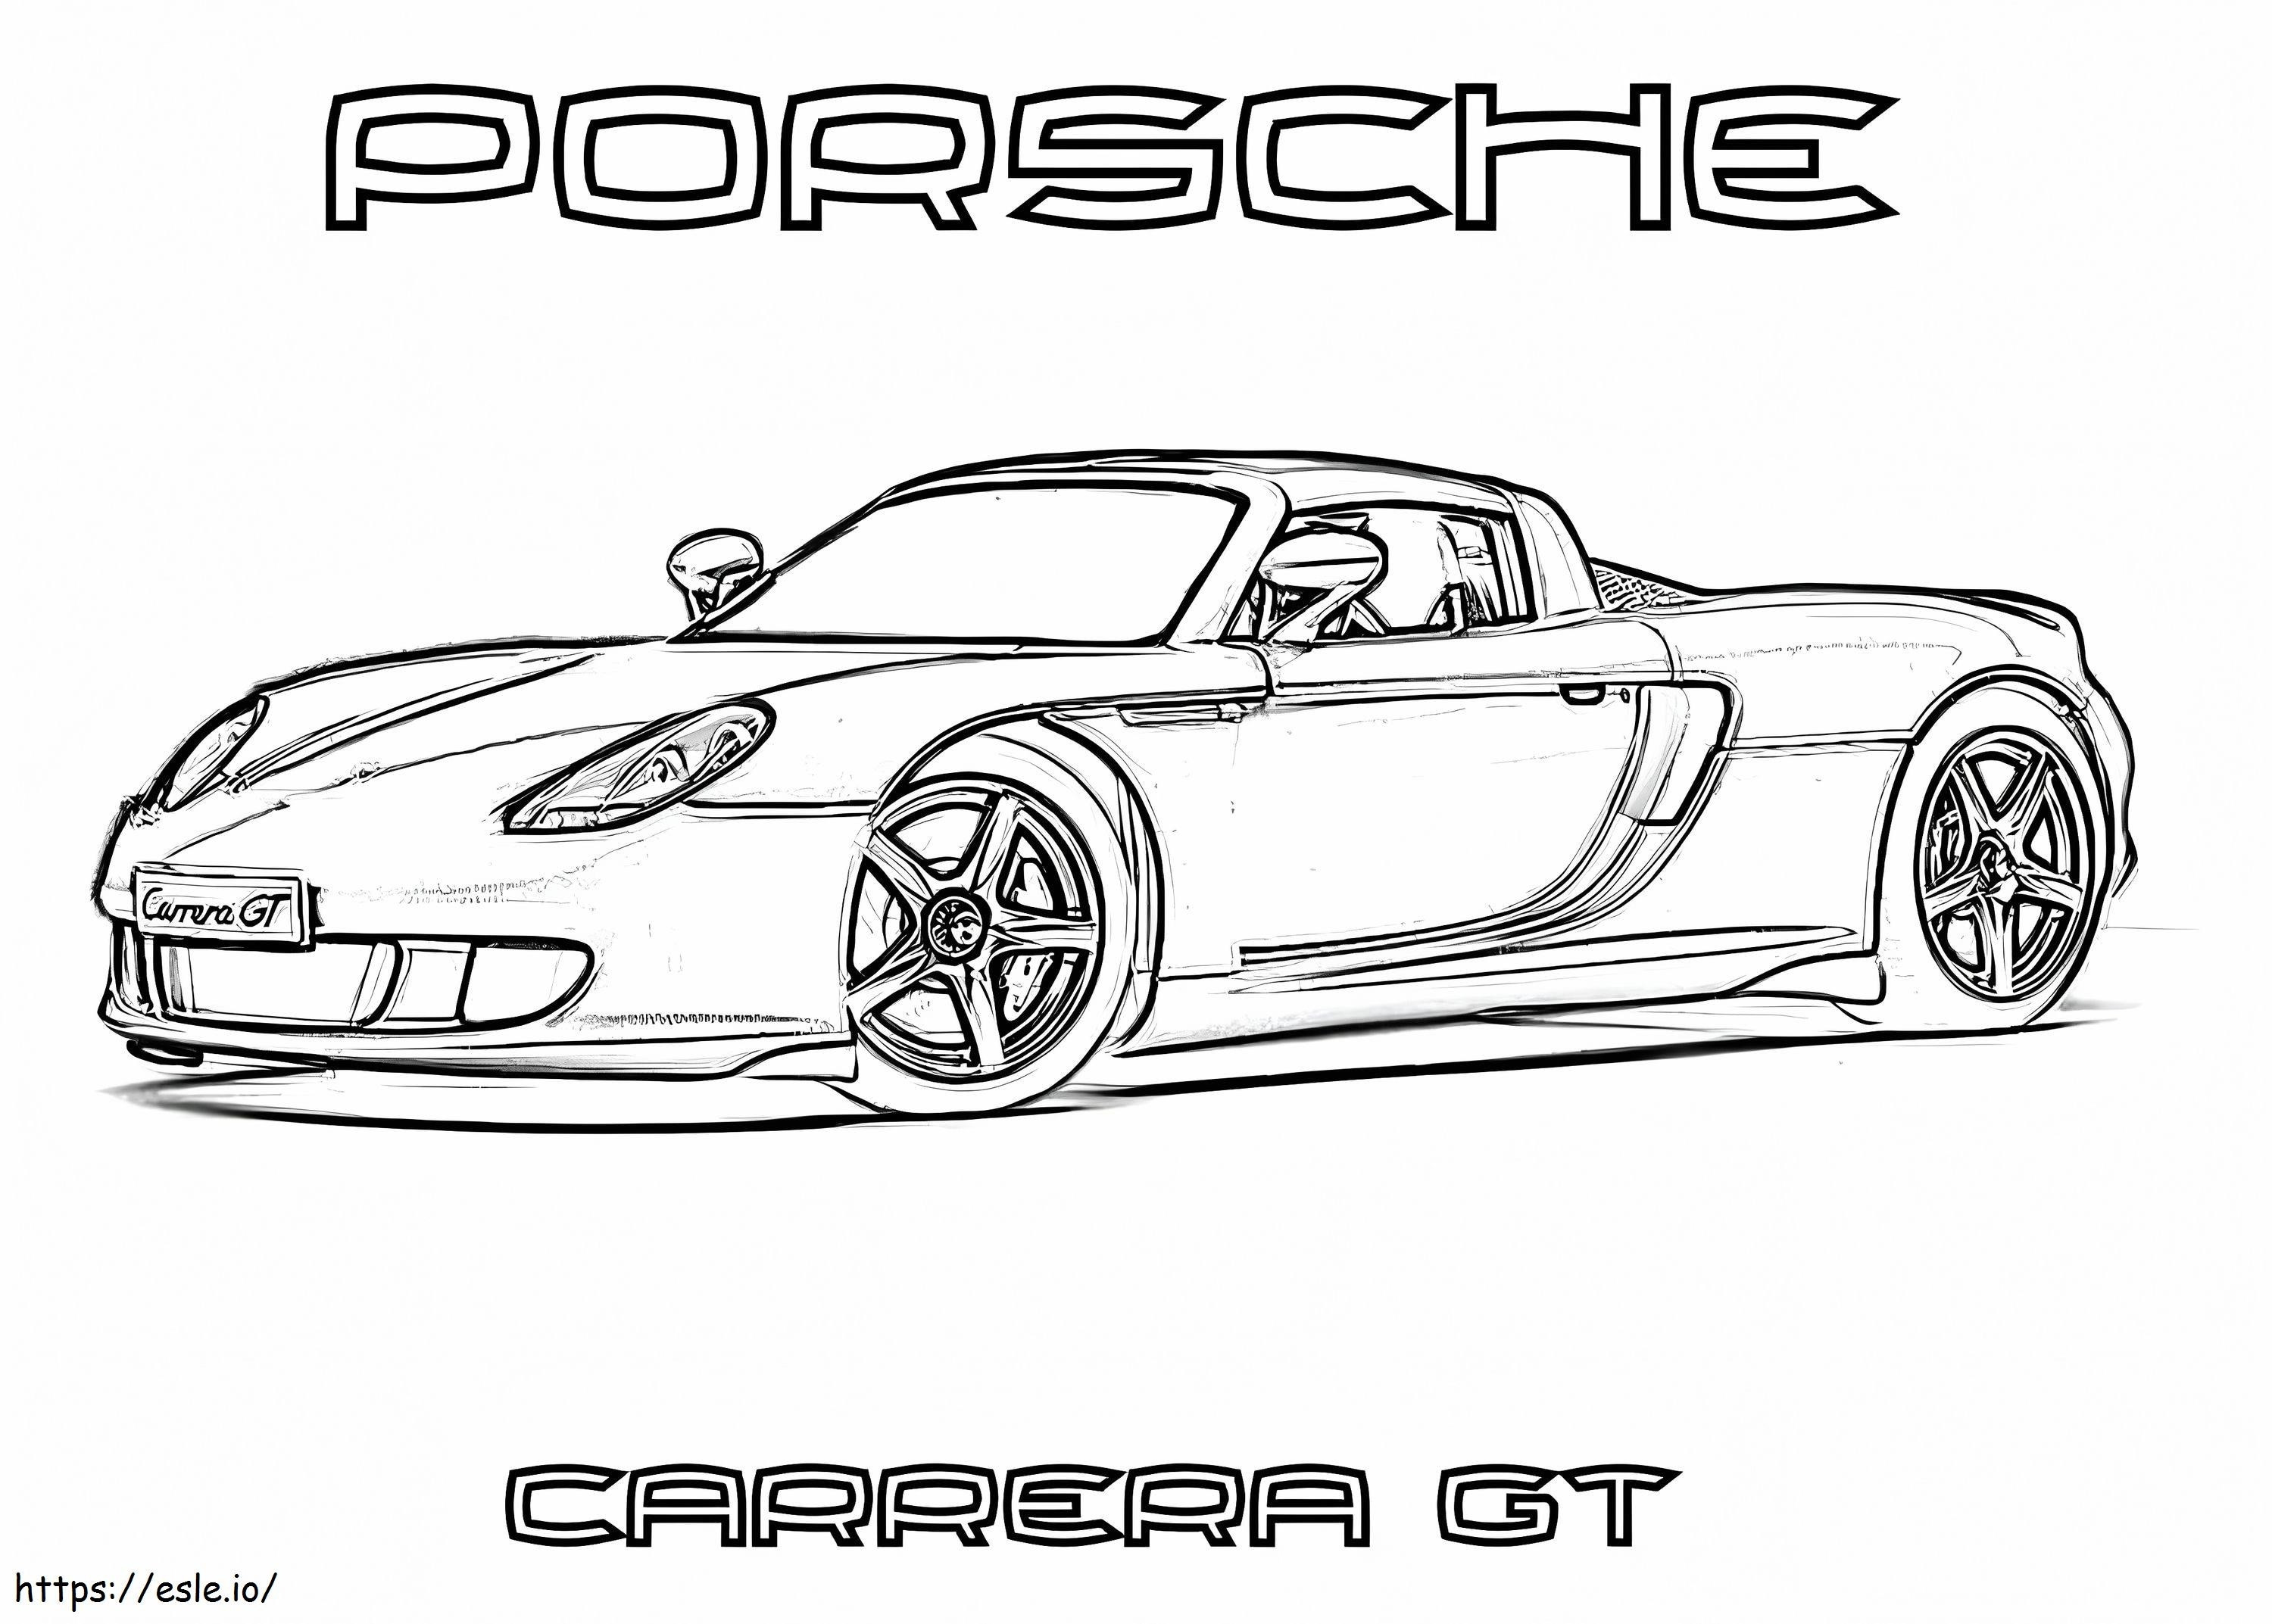 Porsche 5 boyama